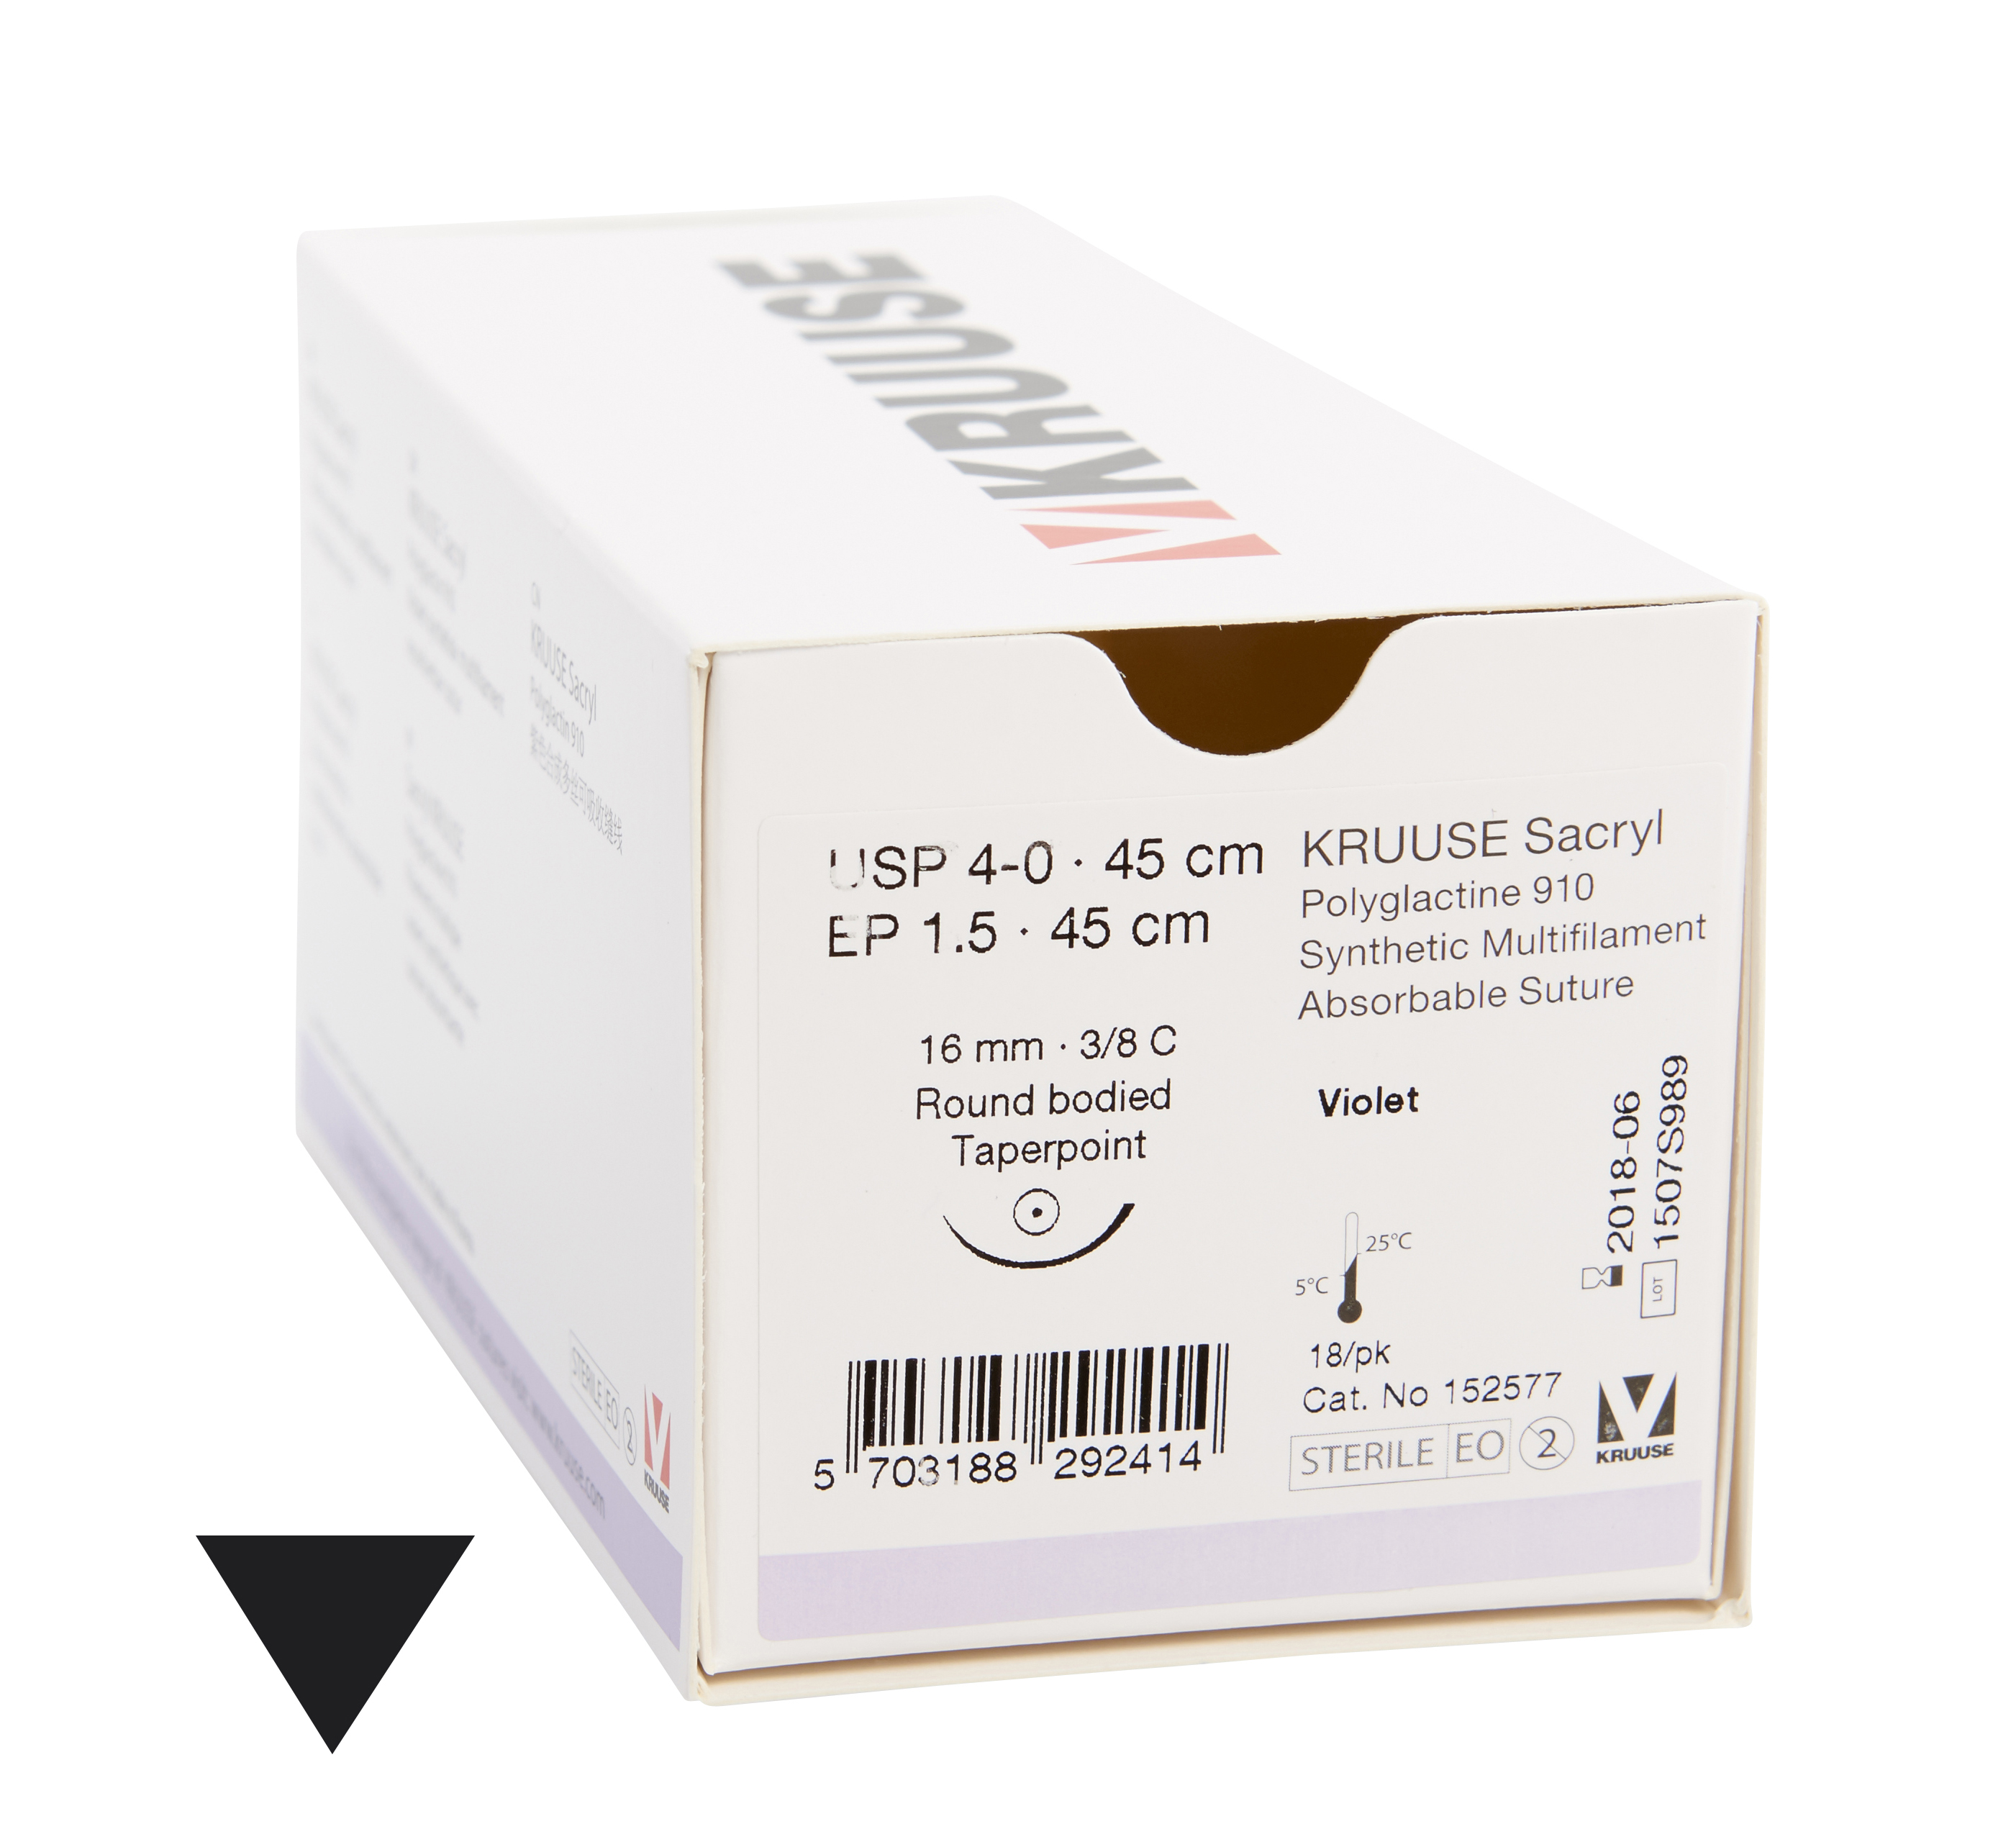 KRUUSE Sacryl Suture, USP 4-0, 45 cm, violet, 16 mm needle, 3/8 C, taperpoint, 18/pk